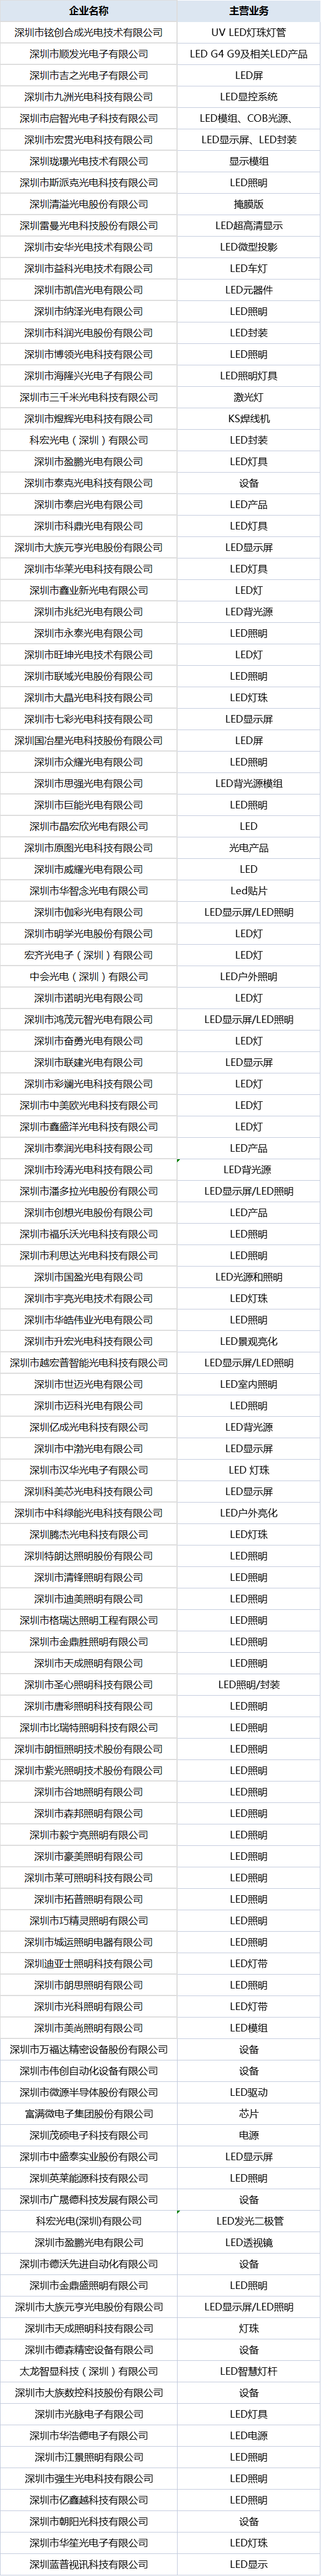 119家LED企业通过深圳“专精特新”中小企业认定